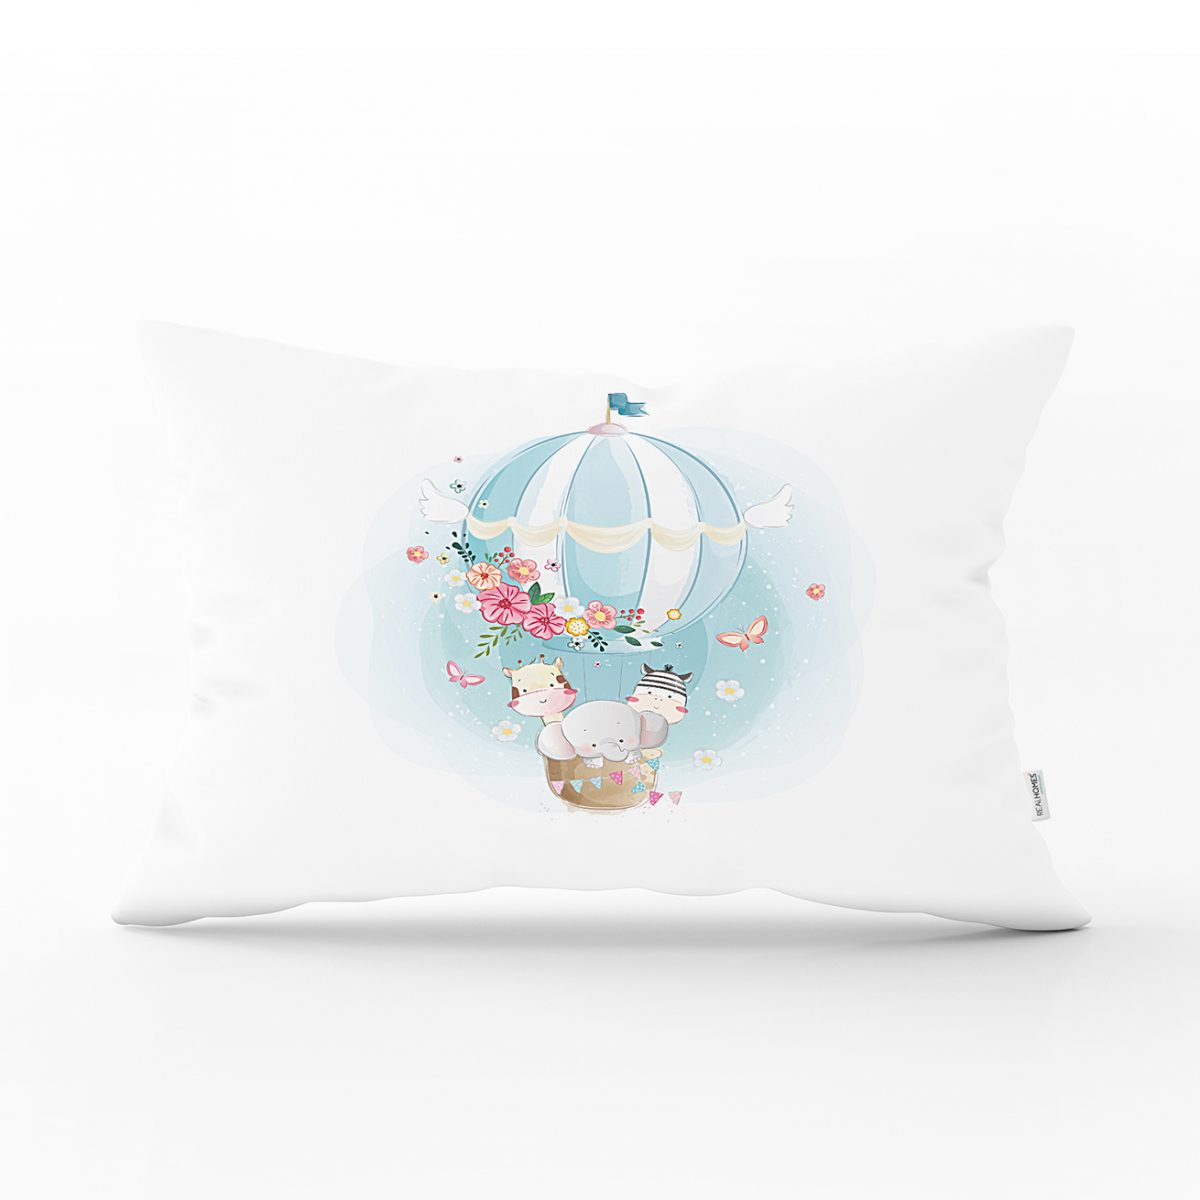 Beyaz Zeminde Uçan Balon Desenli Dijital Baskılı Çocuk Odası Dikdörtgen Yastık Kılıfı Realhomes